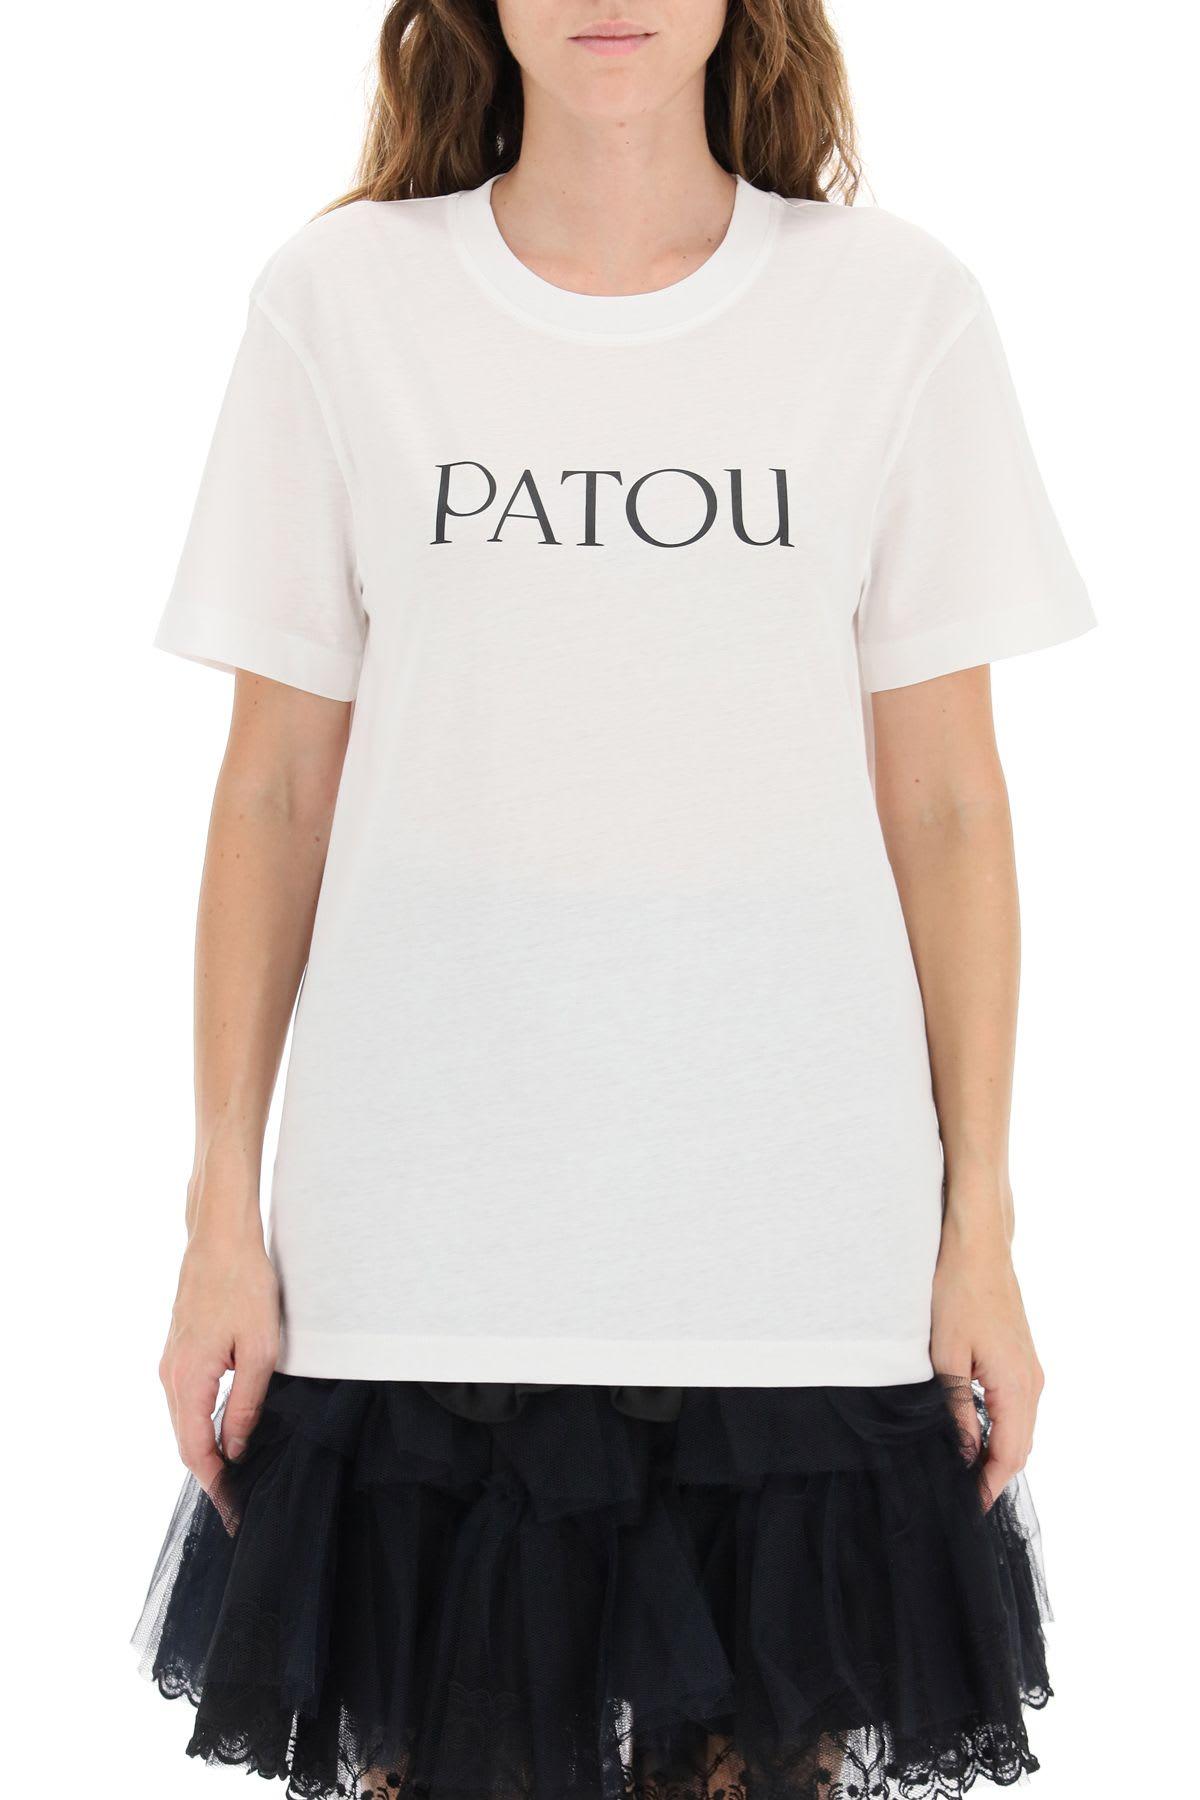 Patou Cotton Logo Print T-shirt in White - Lyst